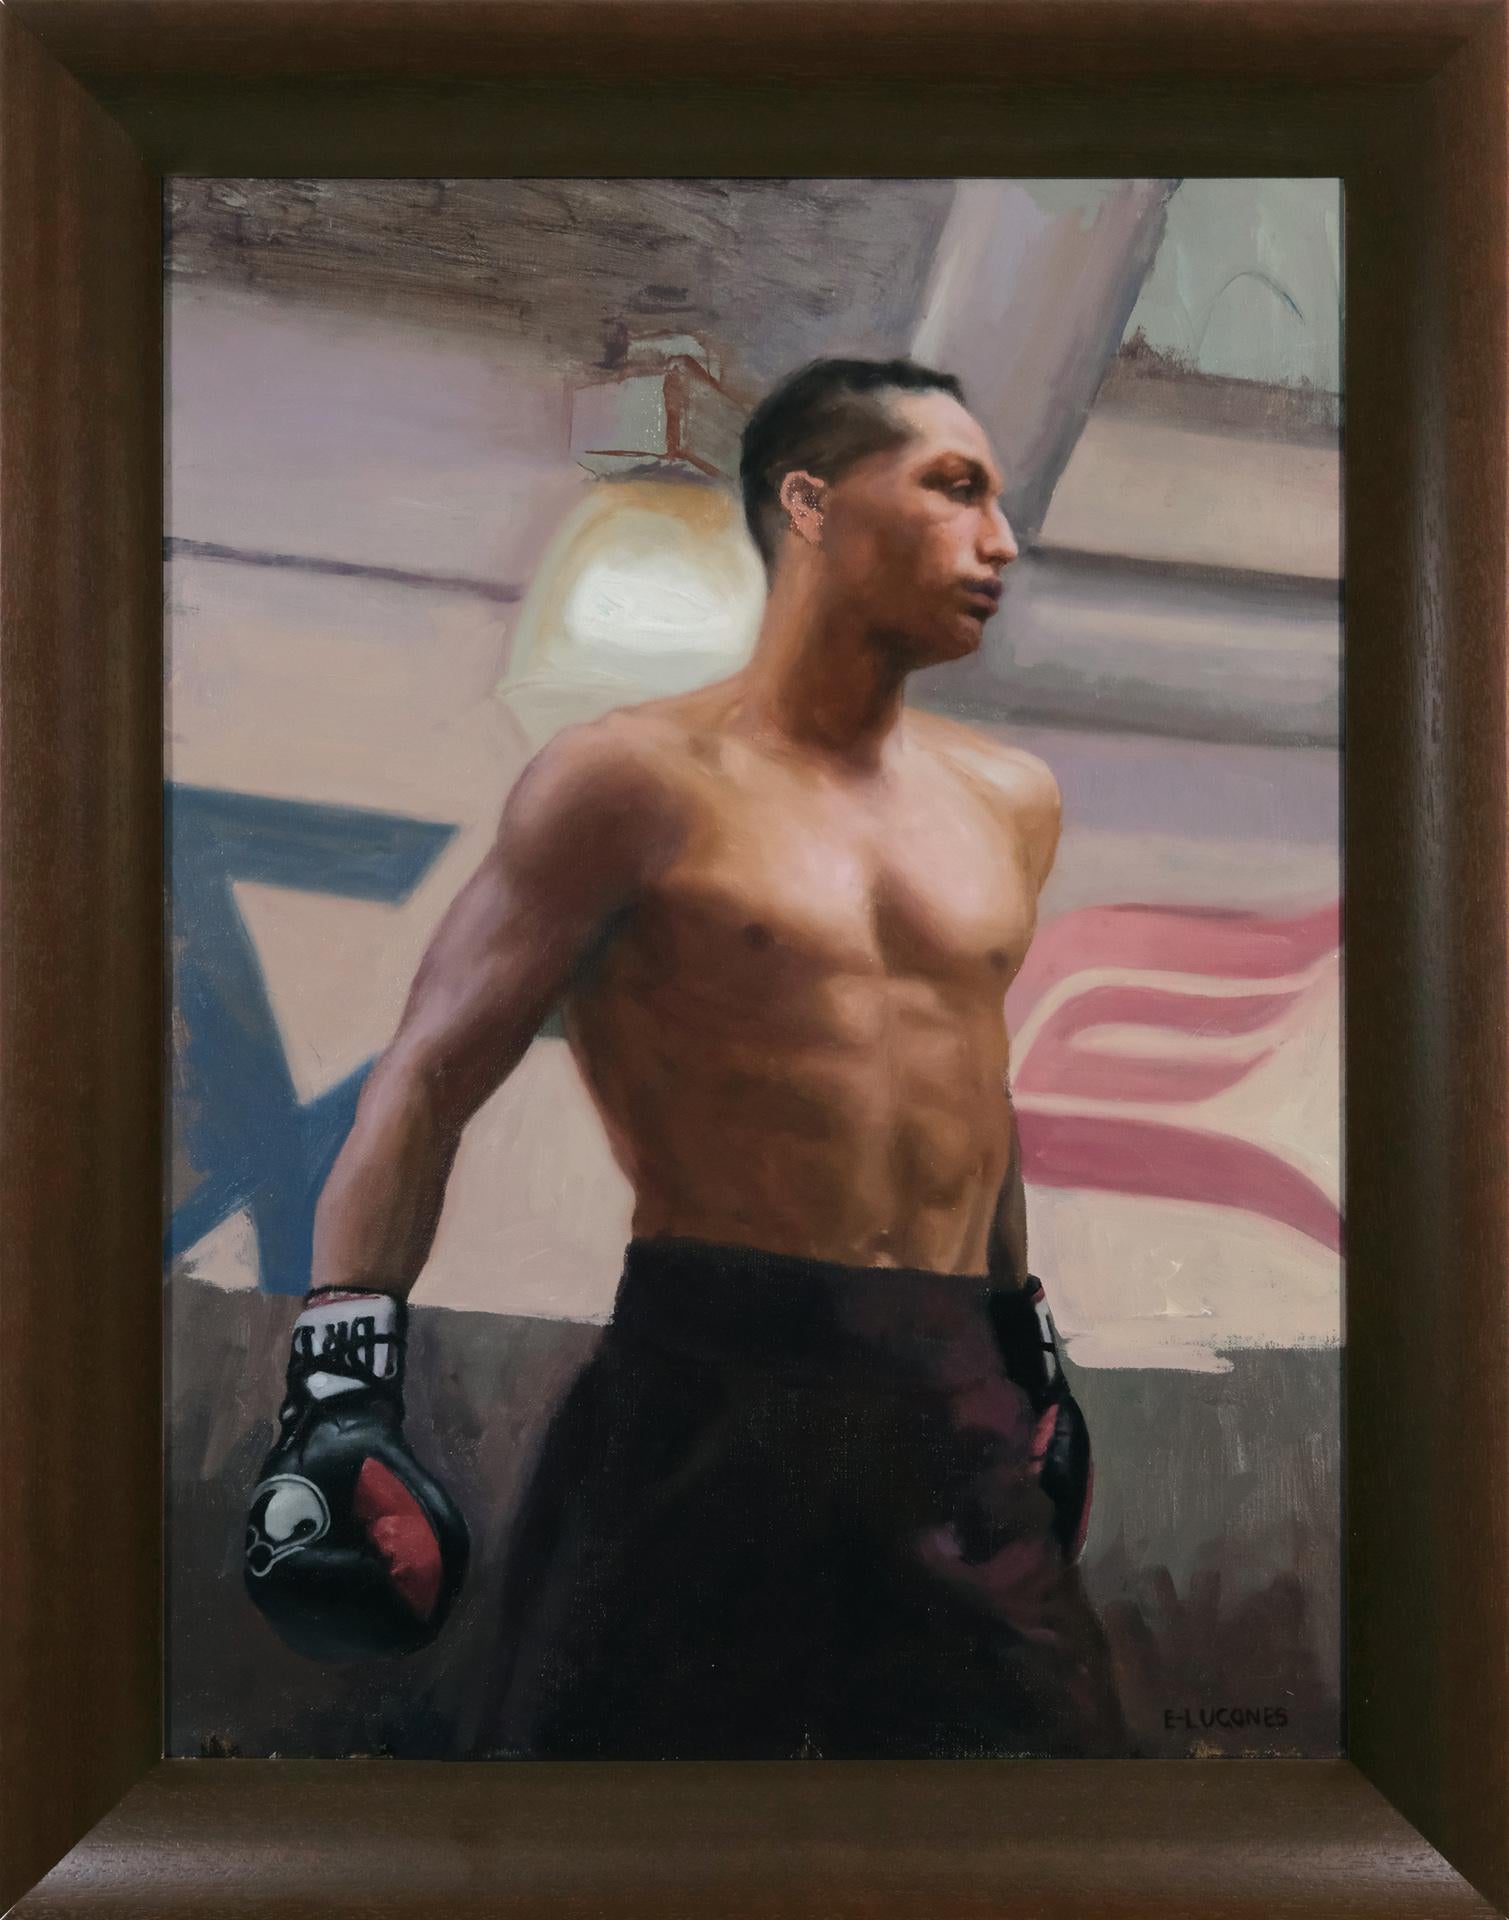 Fights de nuit du samedi, boxe, reste de Jarrod, peinture figurative, artiste cubain